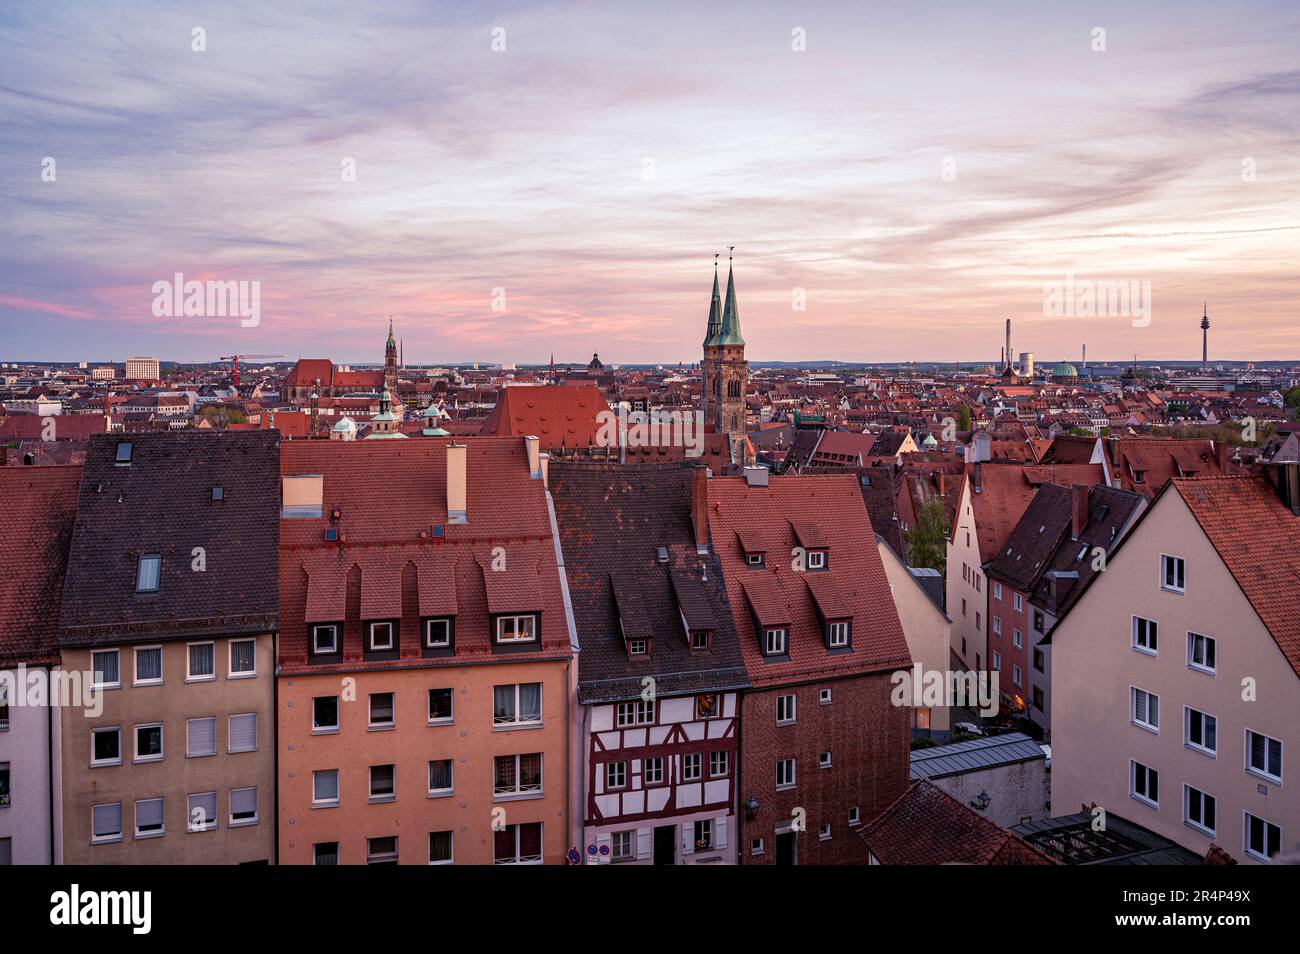 Vue sur la vieille ville de Nuremberg au coucher du soleil depuis le château de Nuremberg Banque D'Images